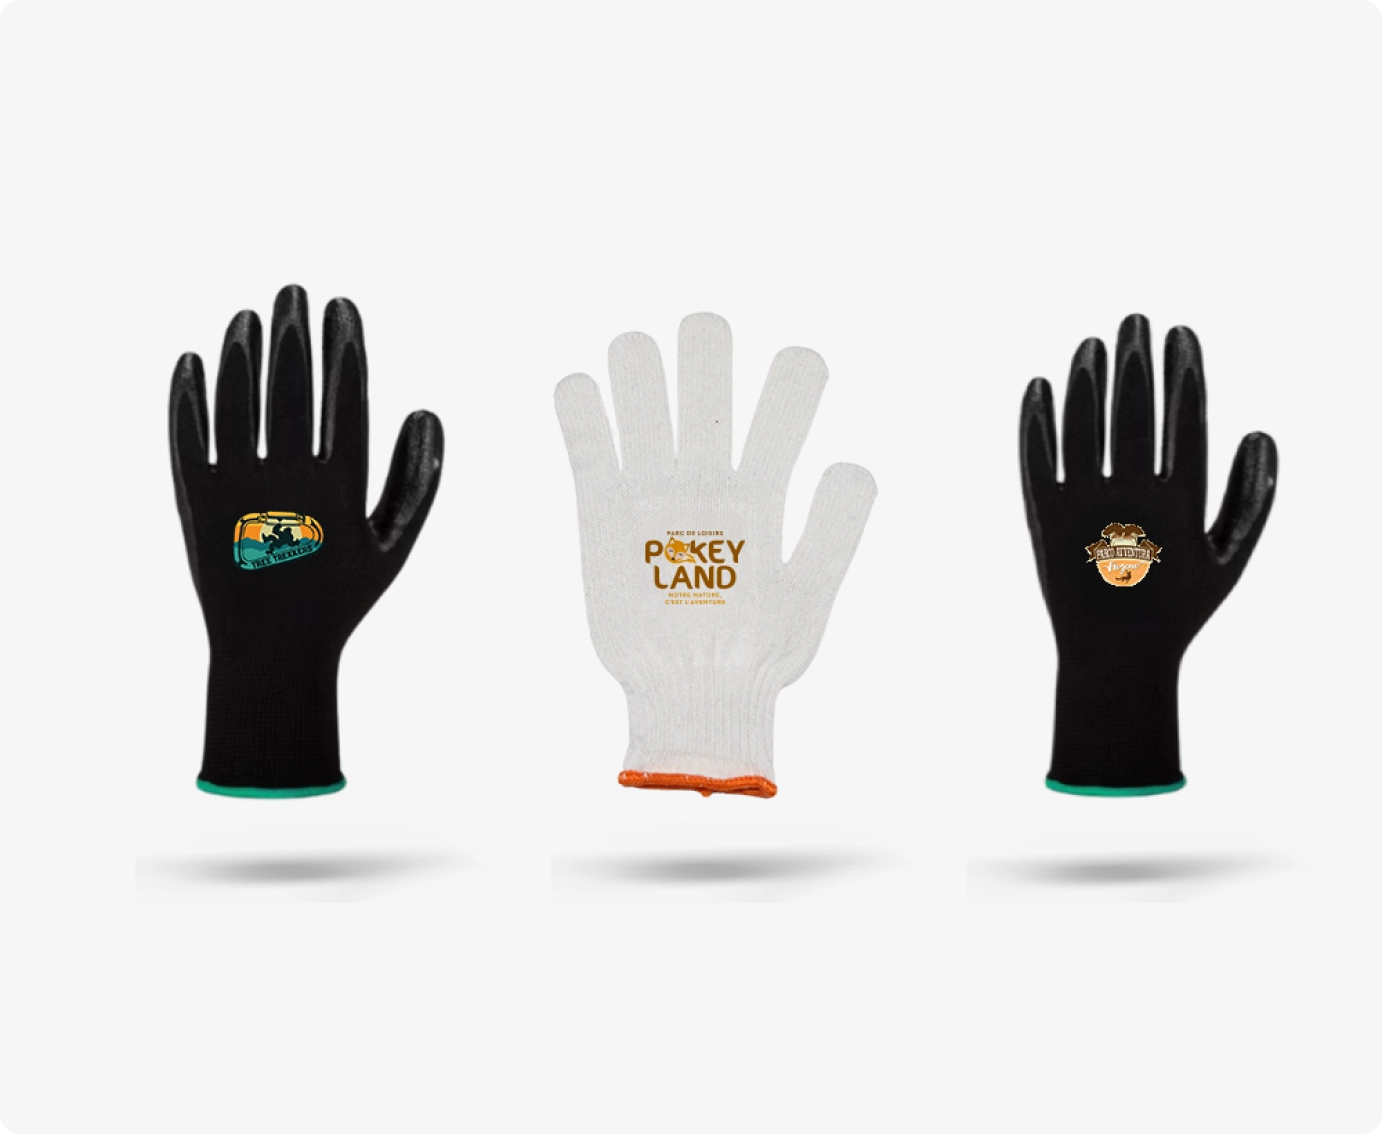 Fotos ilustrativas para presentar los materiales de guantes para parque de aventuras